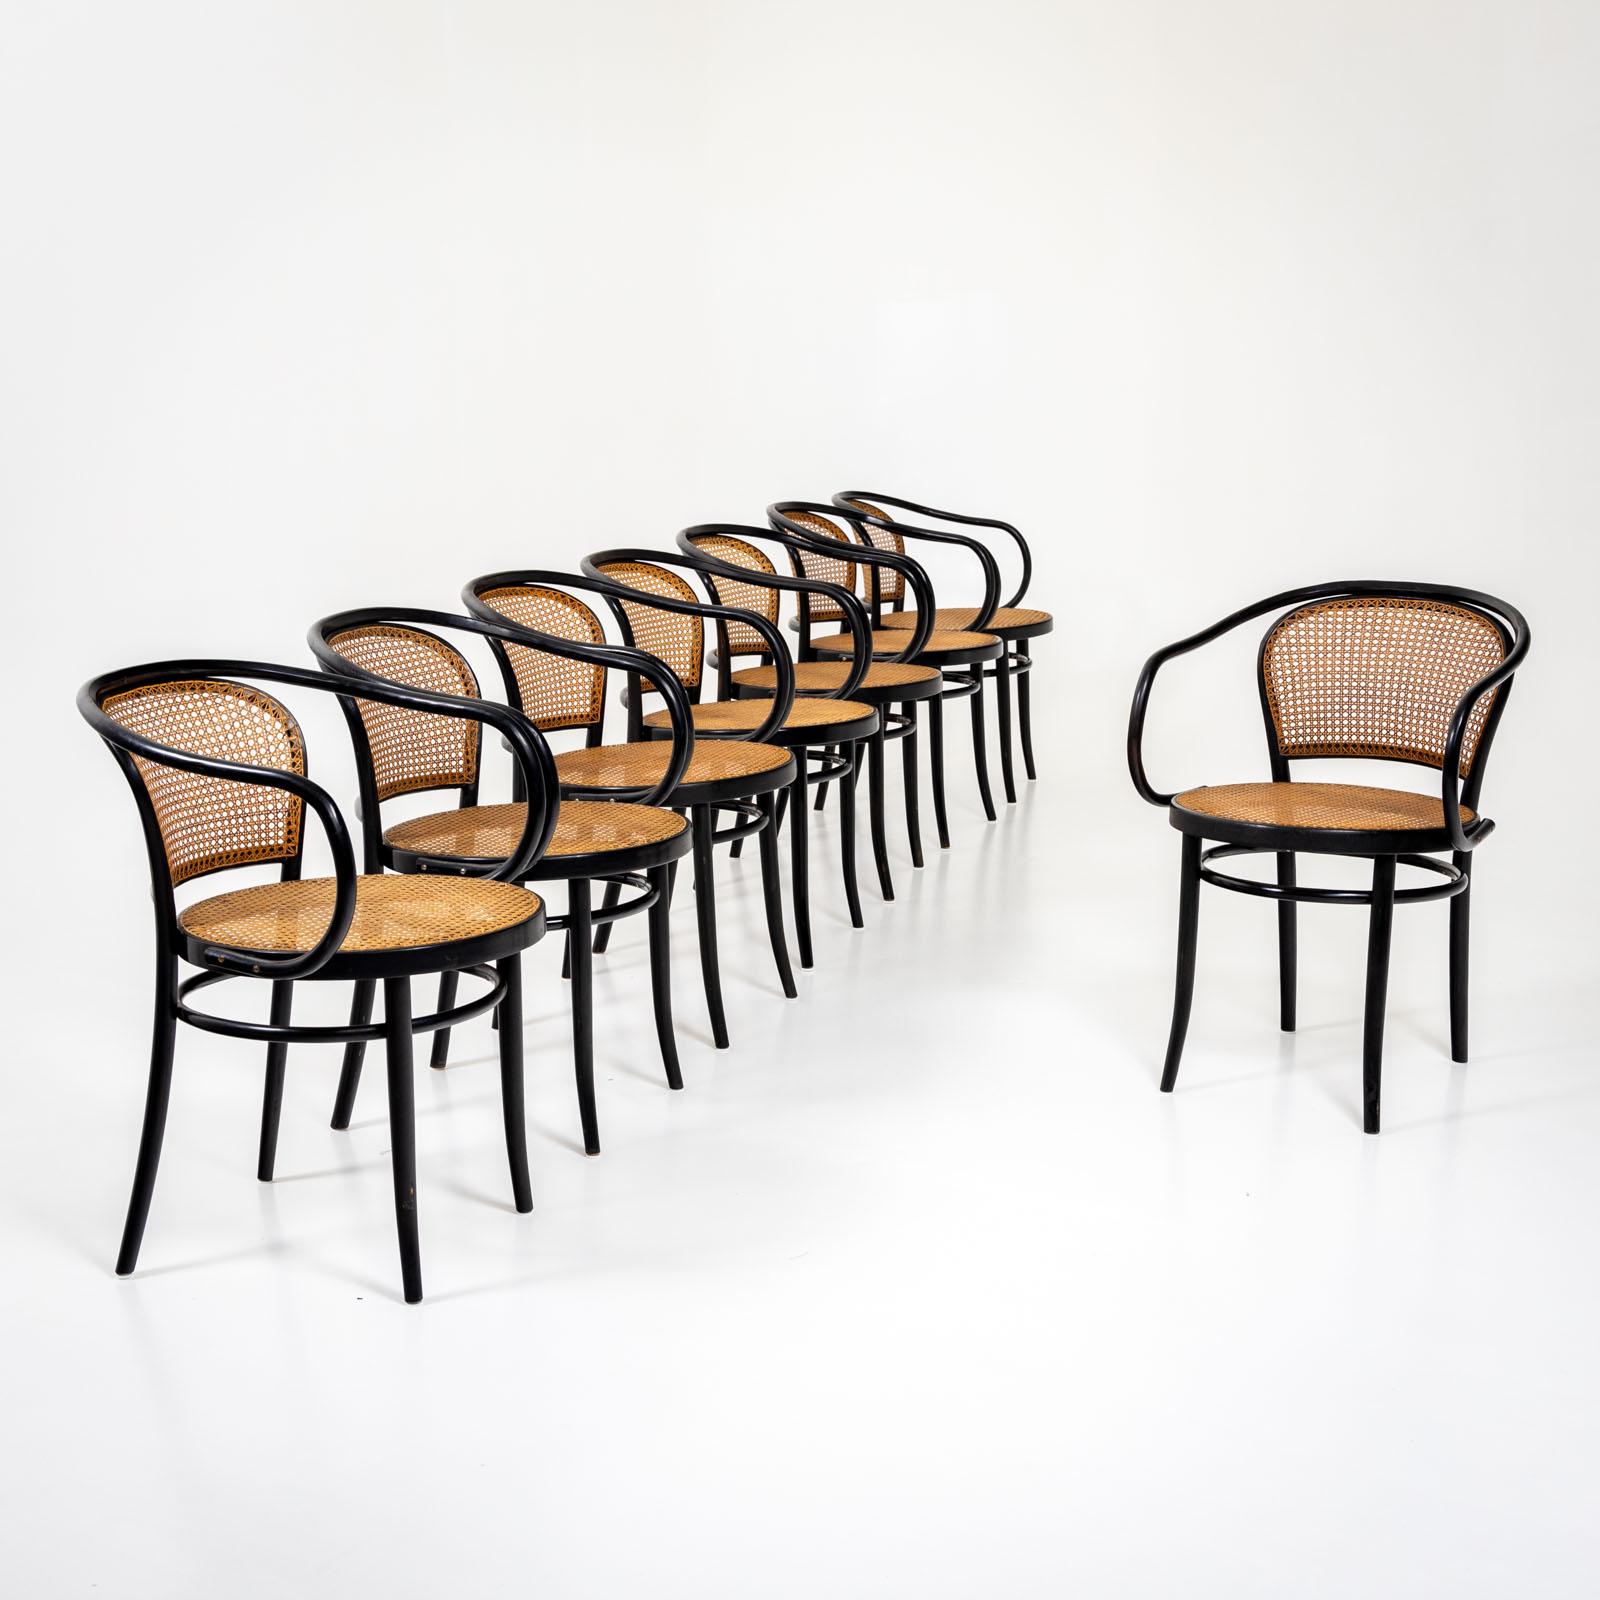 Satz von zehn schwarzen Bugholzstühlen von Drevounia, ehemals Tschechoslowakei. Die Stühle sind im Stil von Thonet gestaltet. Die Sitze und Rückenlehnen sind mit Wiener Geflecht bezogen. Label auf der Unterseite: 